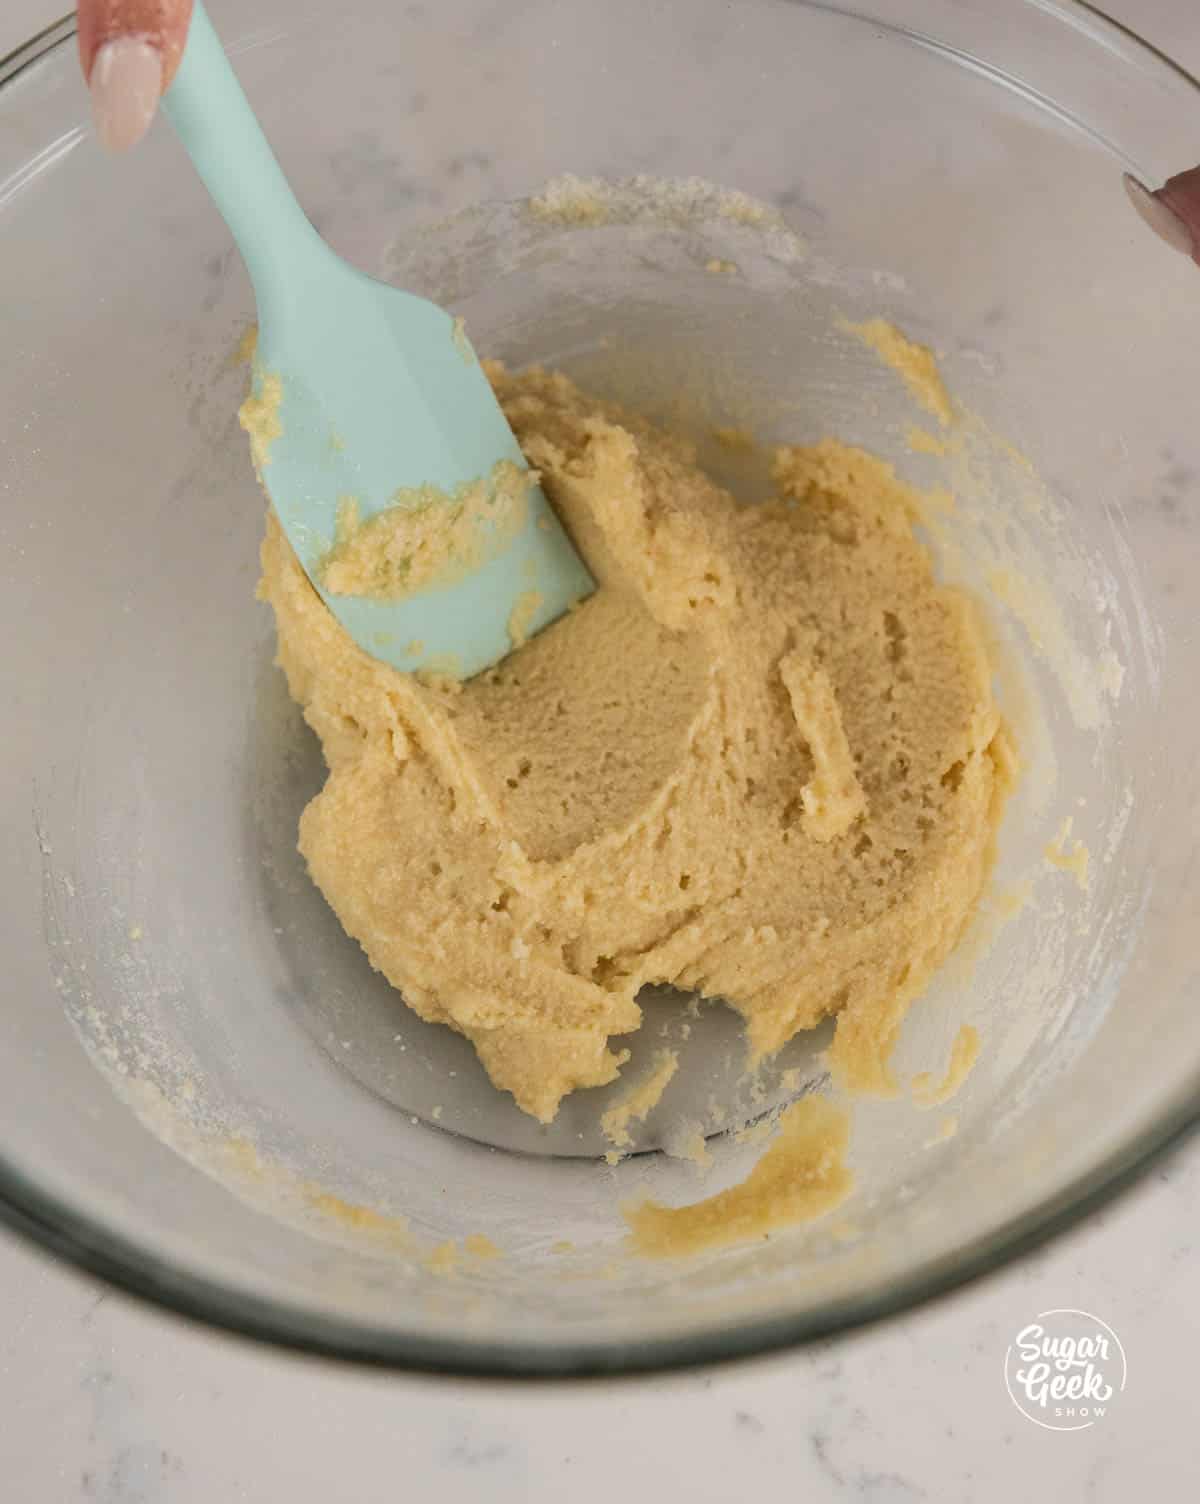 mixing almond flour mixture with egg white